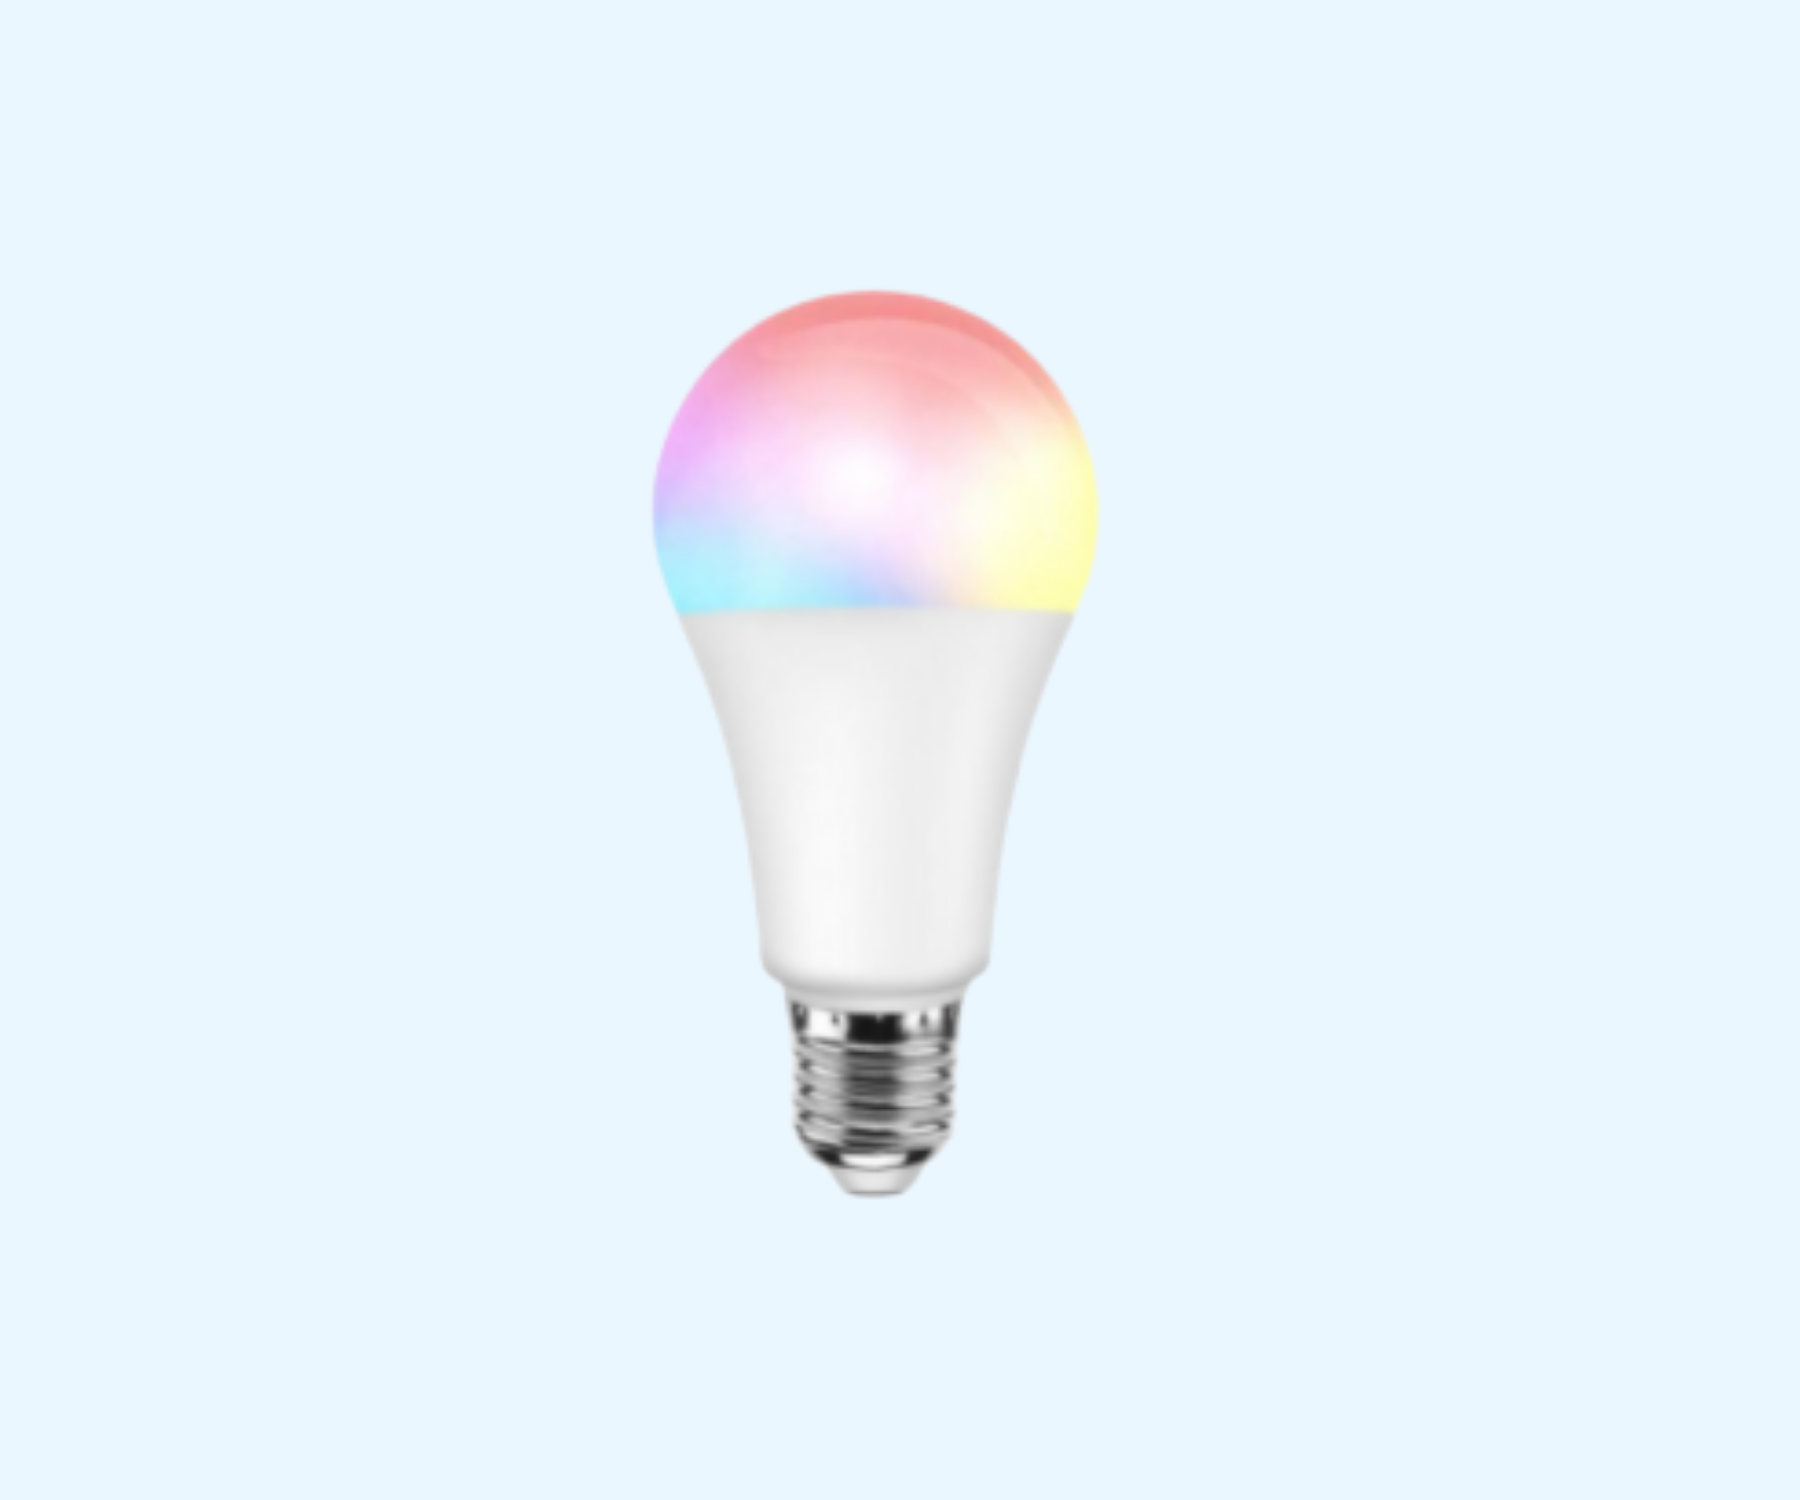 Chytrá žárovka - drobnost, která vám změní život